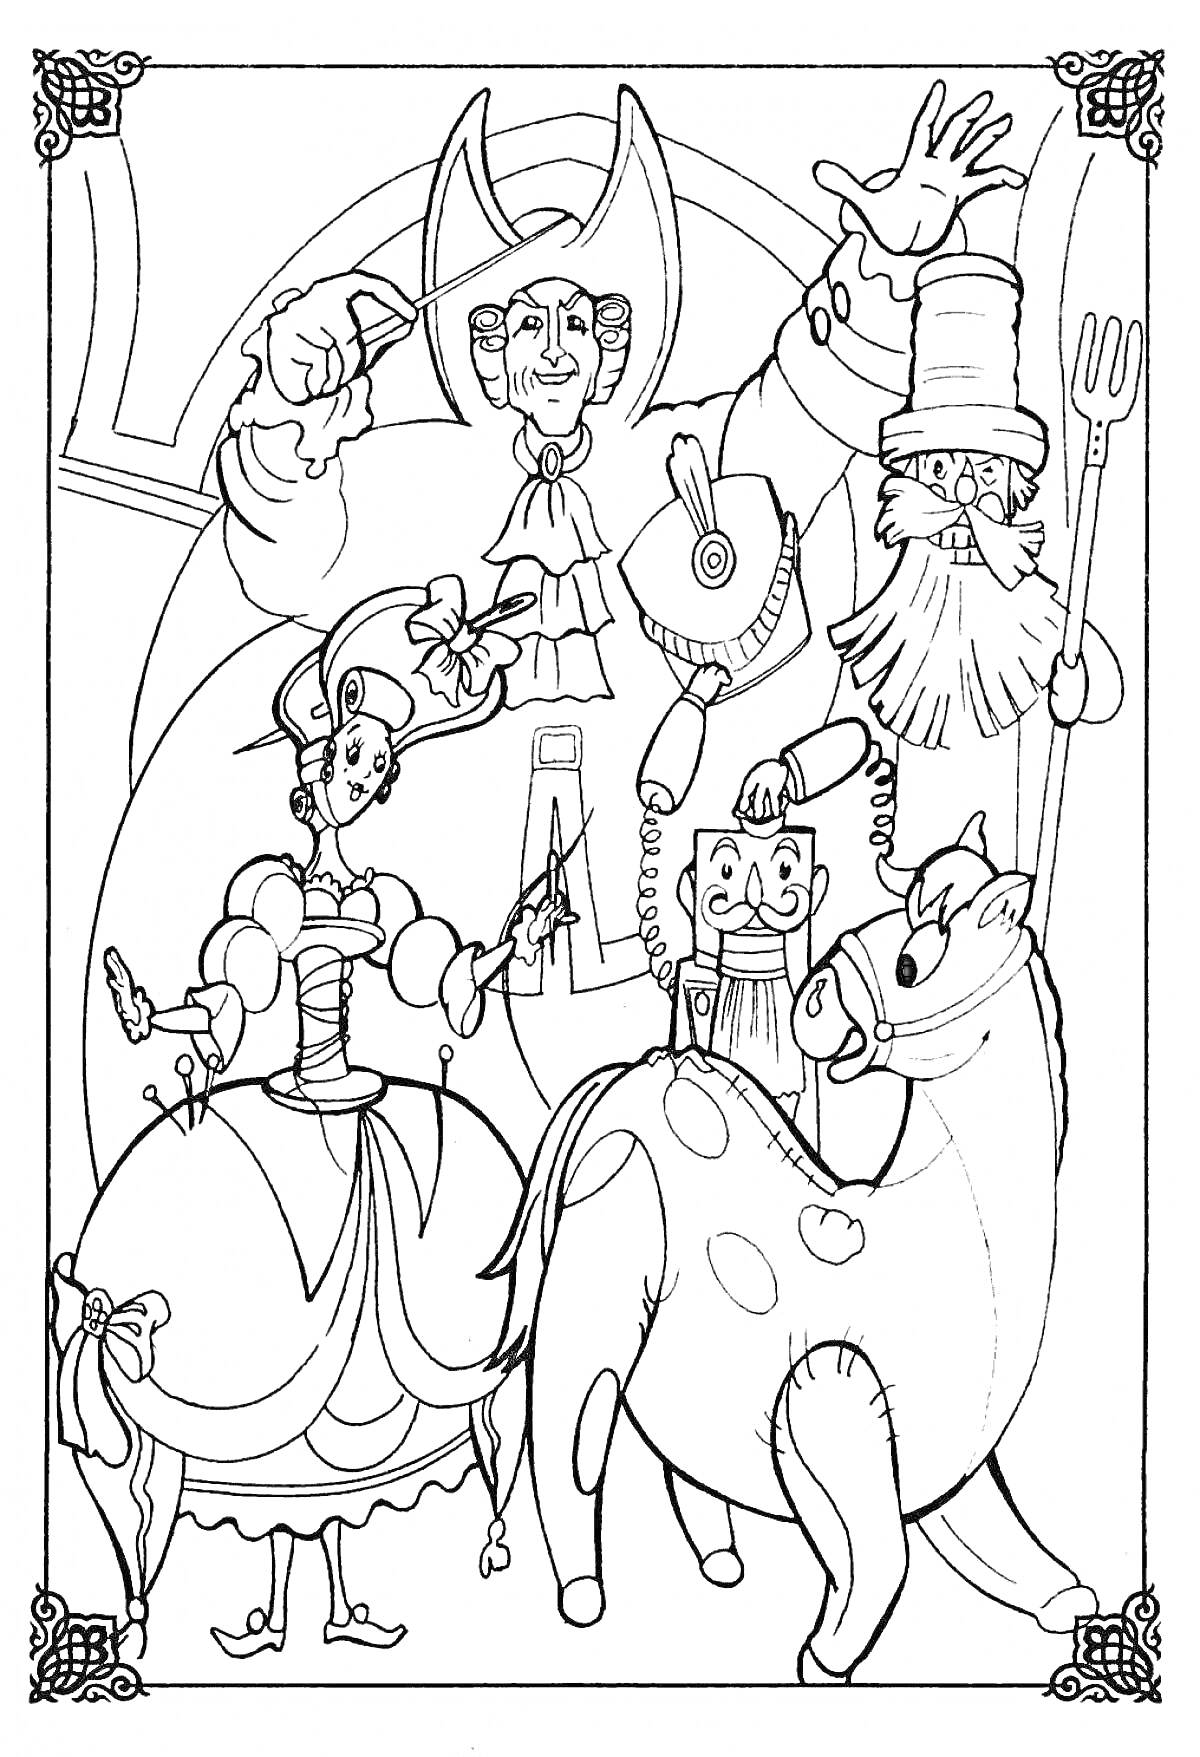 Раскраска Главные герои Щелкунчика: Щелкунчик, деревянная лошадка, балерина, кукольный король и кукольный солдат